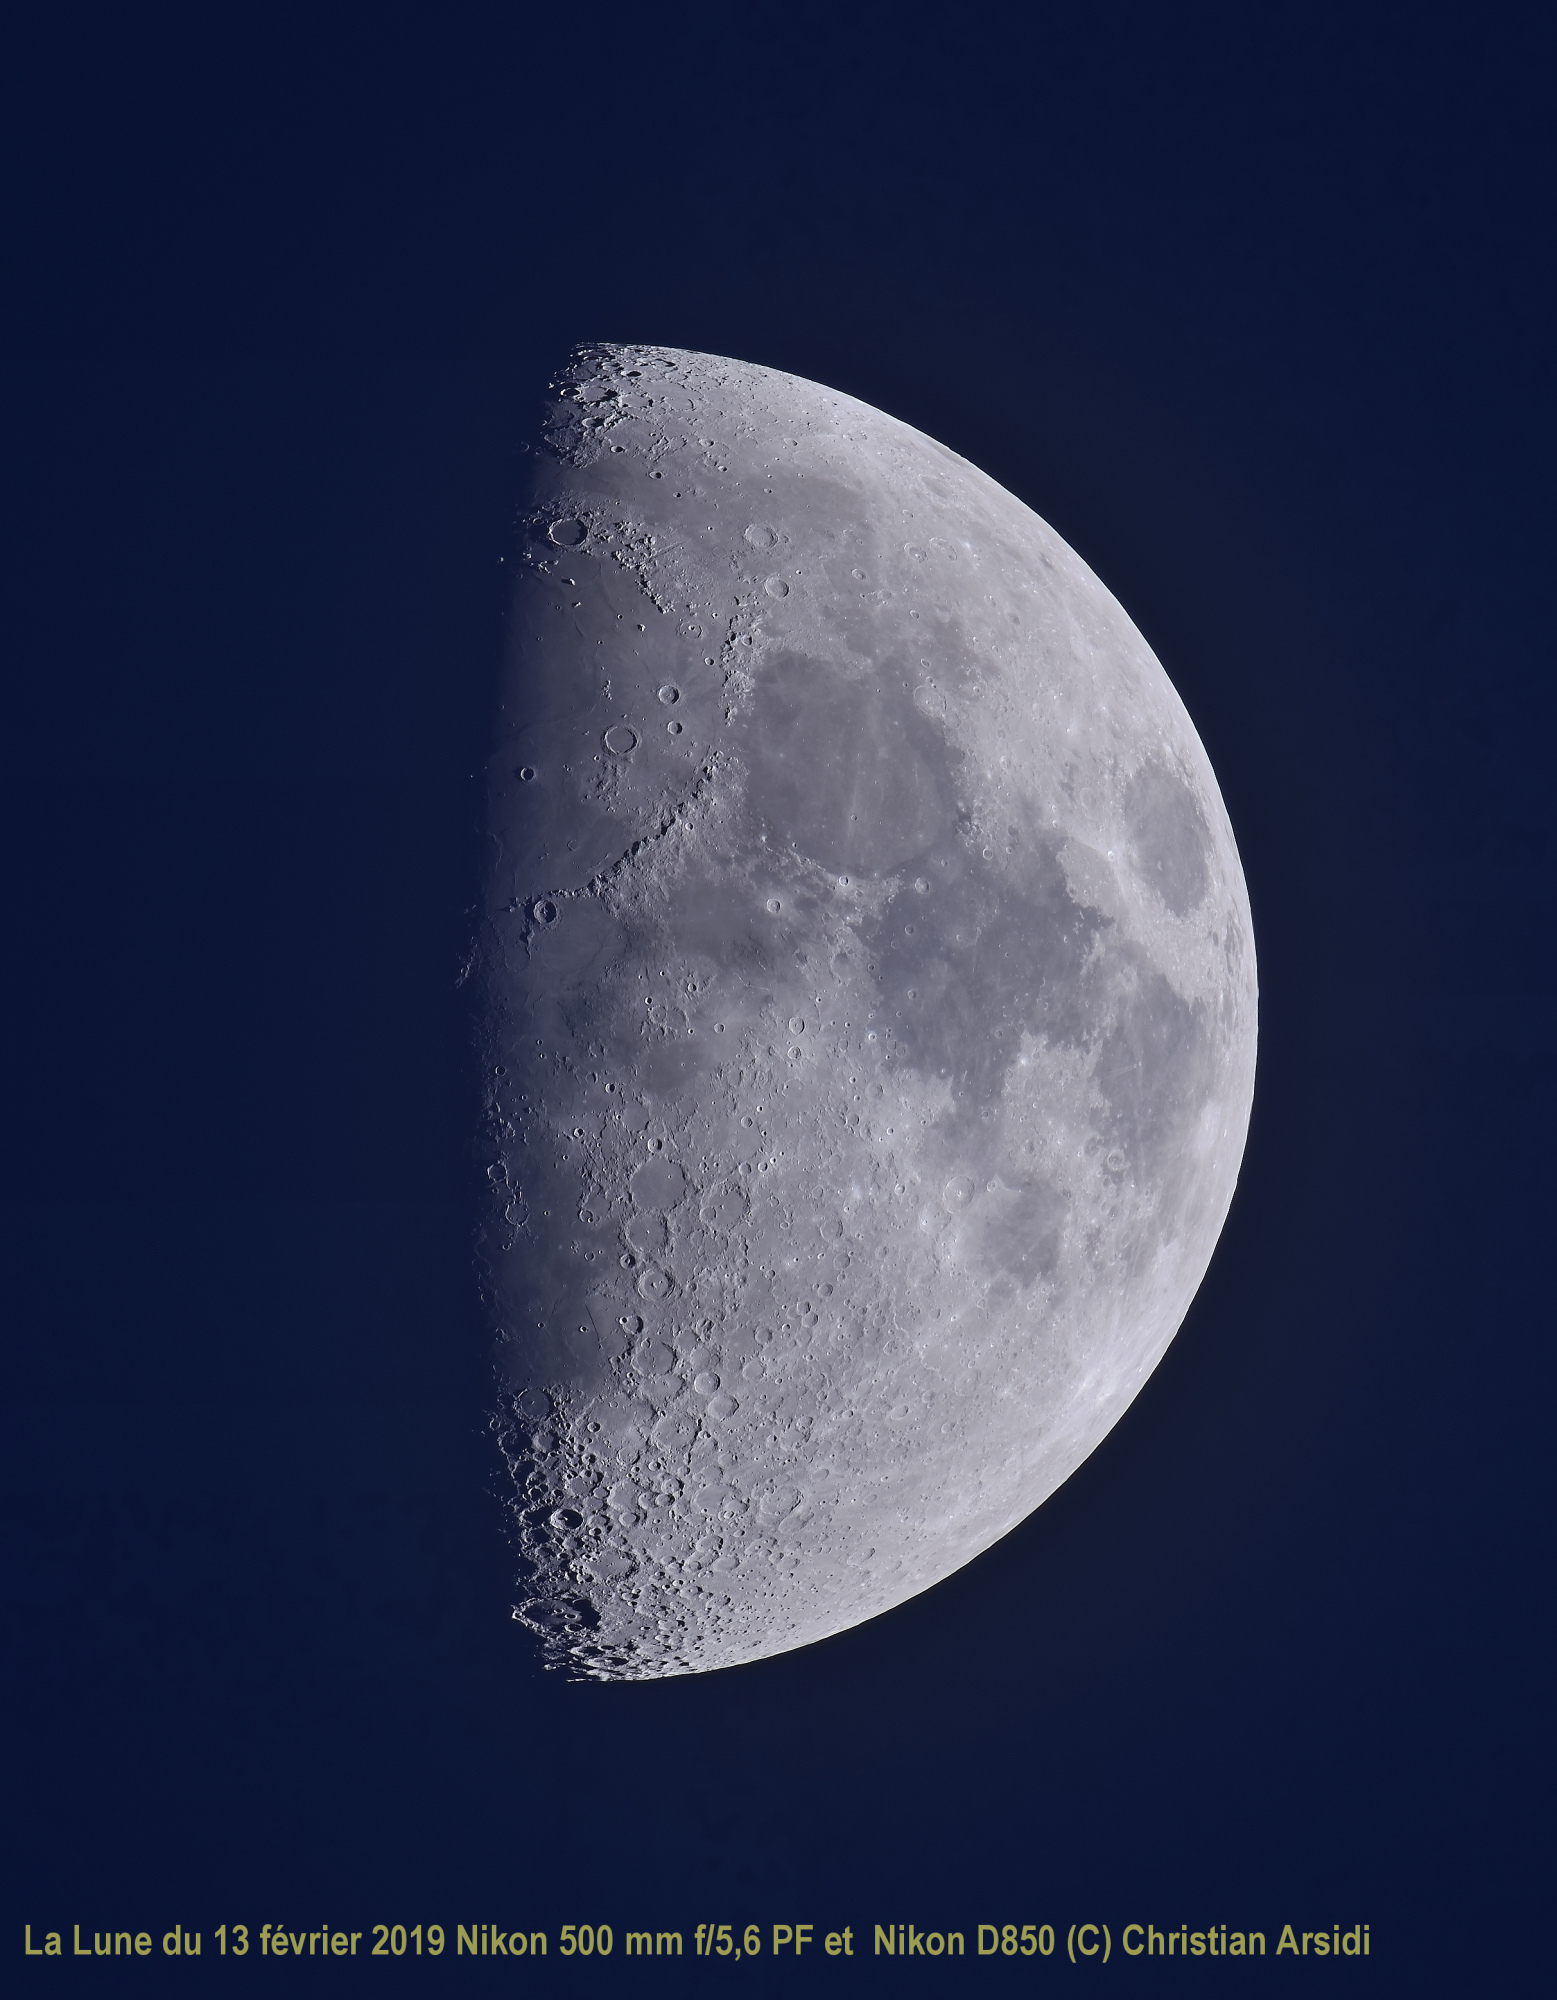 La Lune 35 images vancittert recadrée BV 2 TTB JPEG CA.jpg